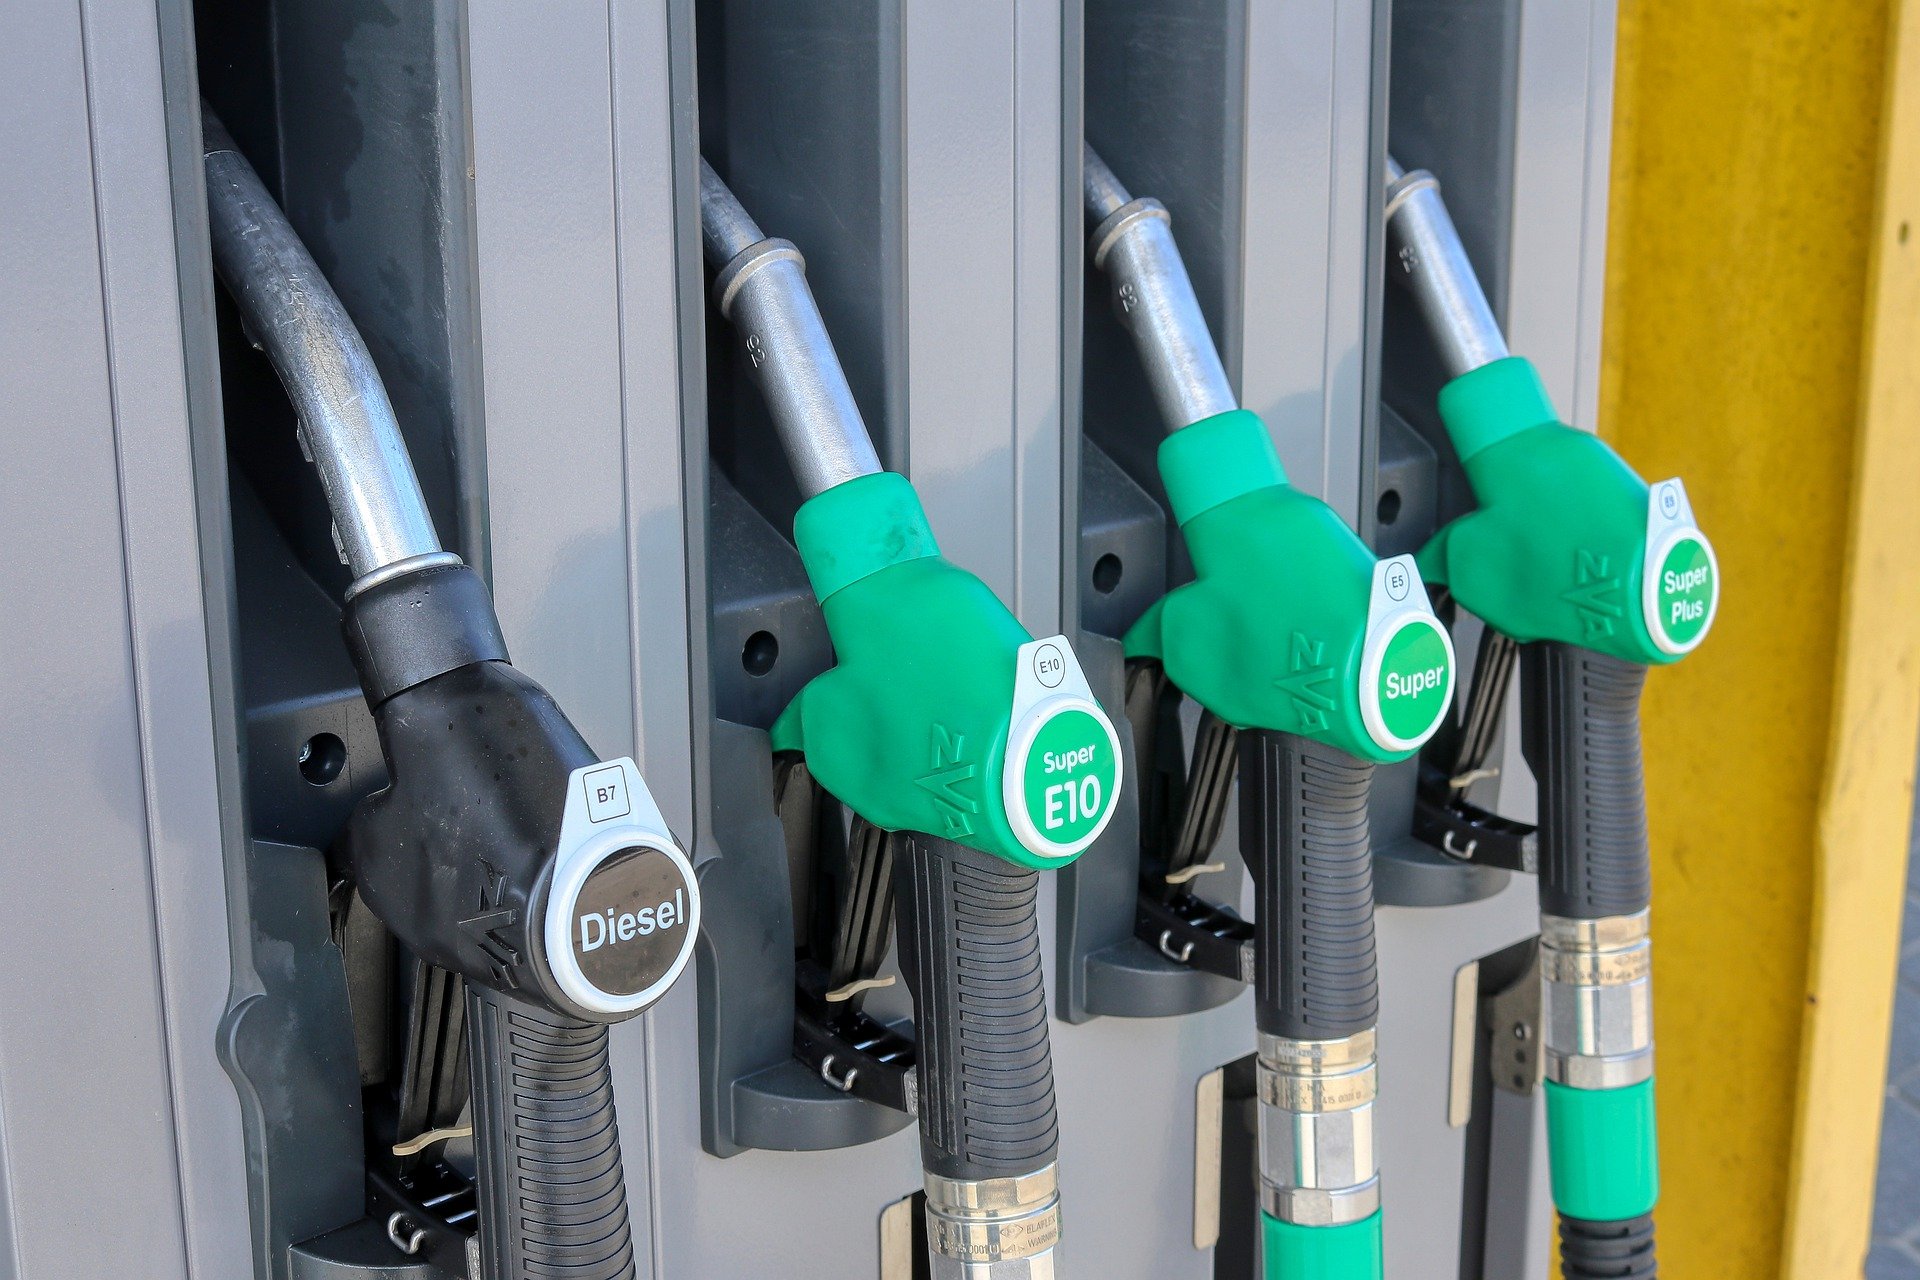 Tanktourismus floriert in Ungarn nach Einführung einer Benzinpreisobergrenze durch die Regierung